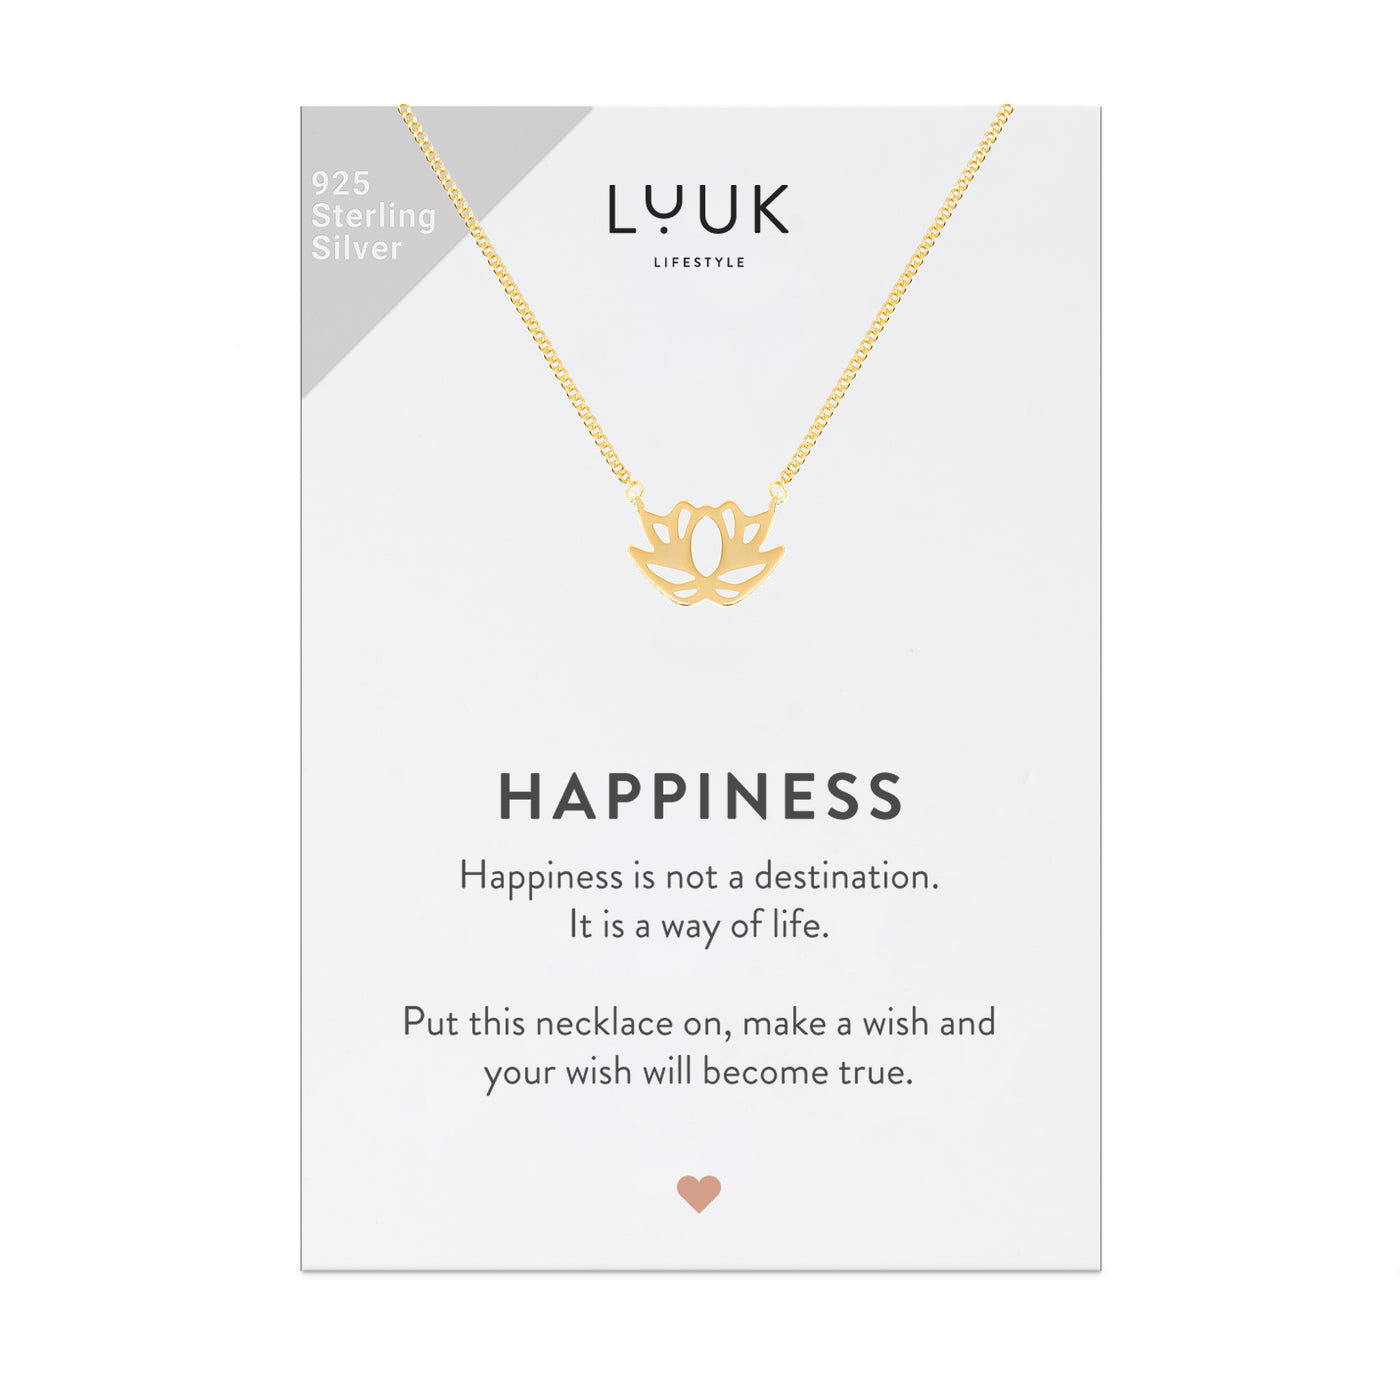 Gold Kette mit Lotusblüten Anhänger auf Happiness Spruchkarte von der Marke Luuk Lifestyle 